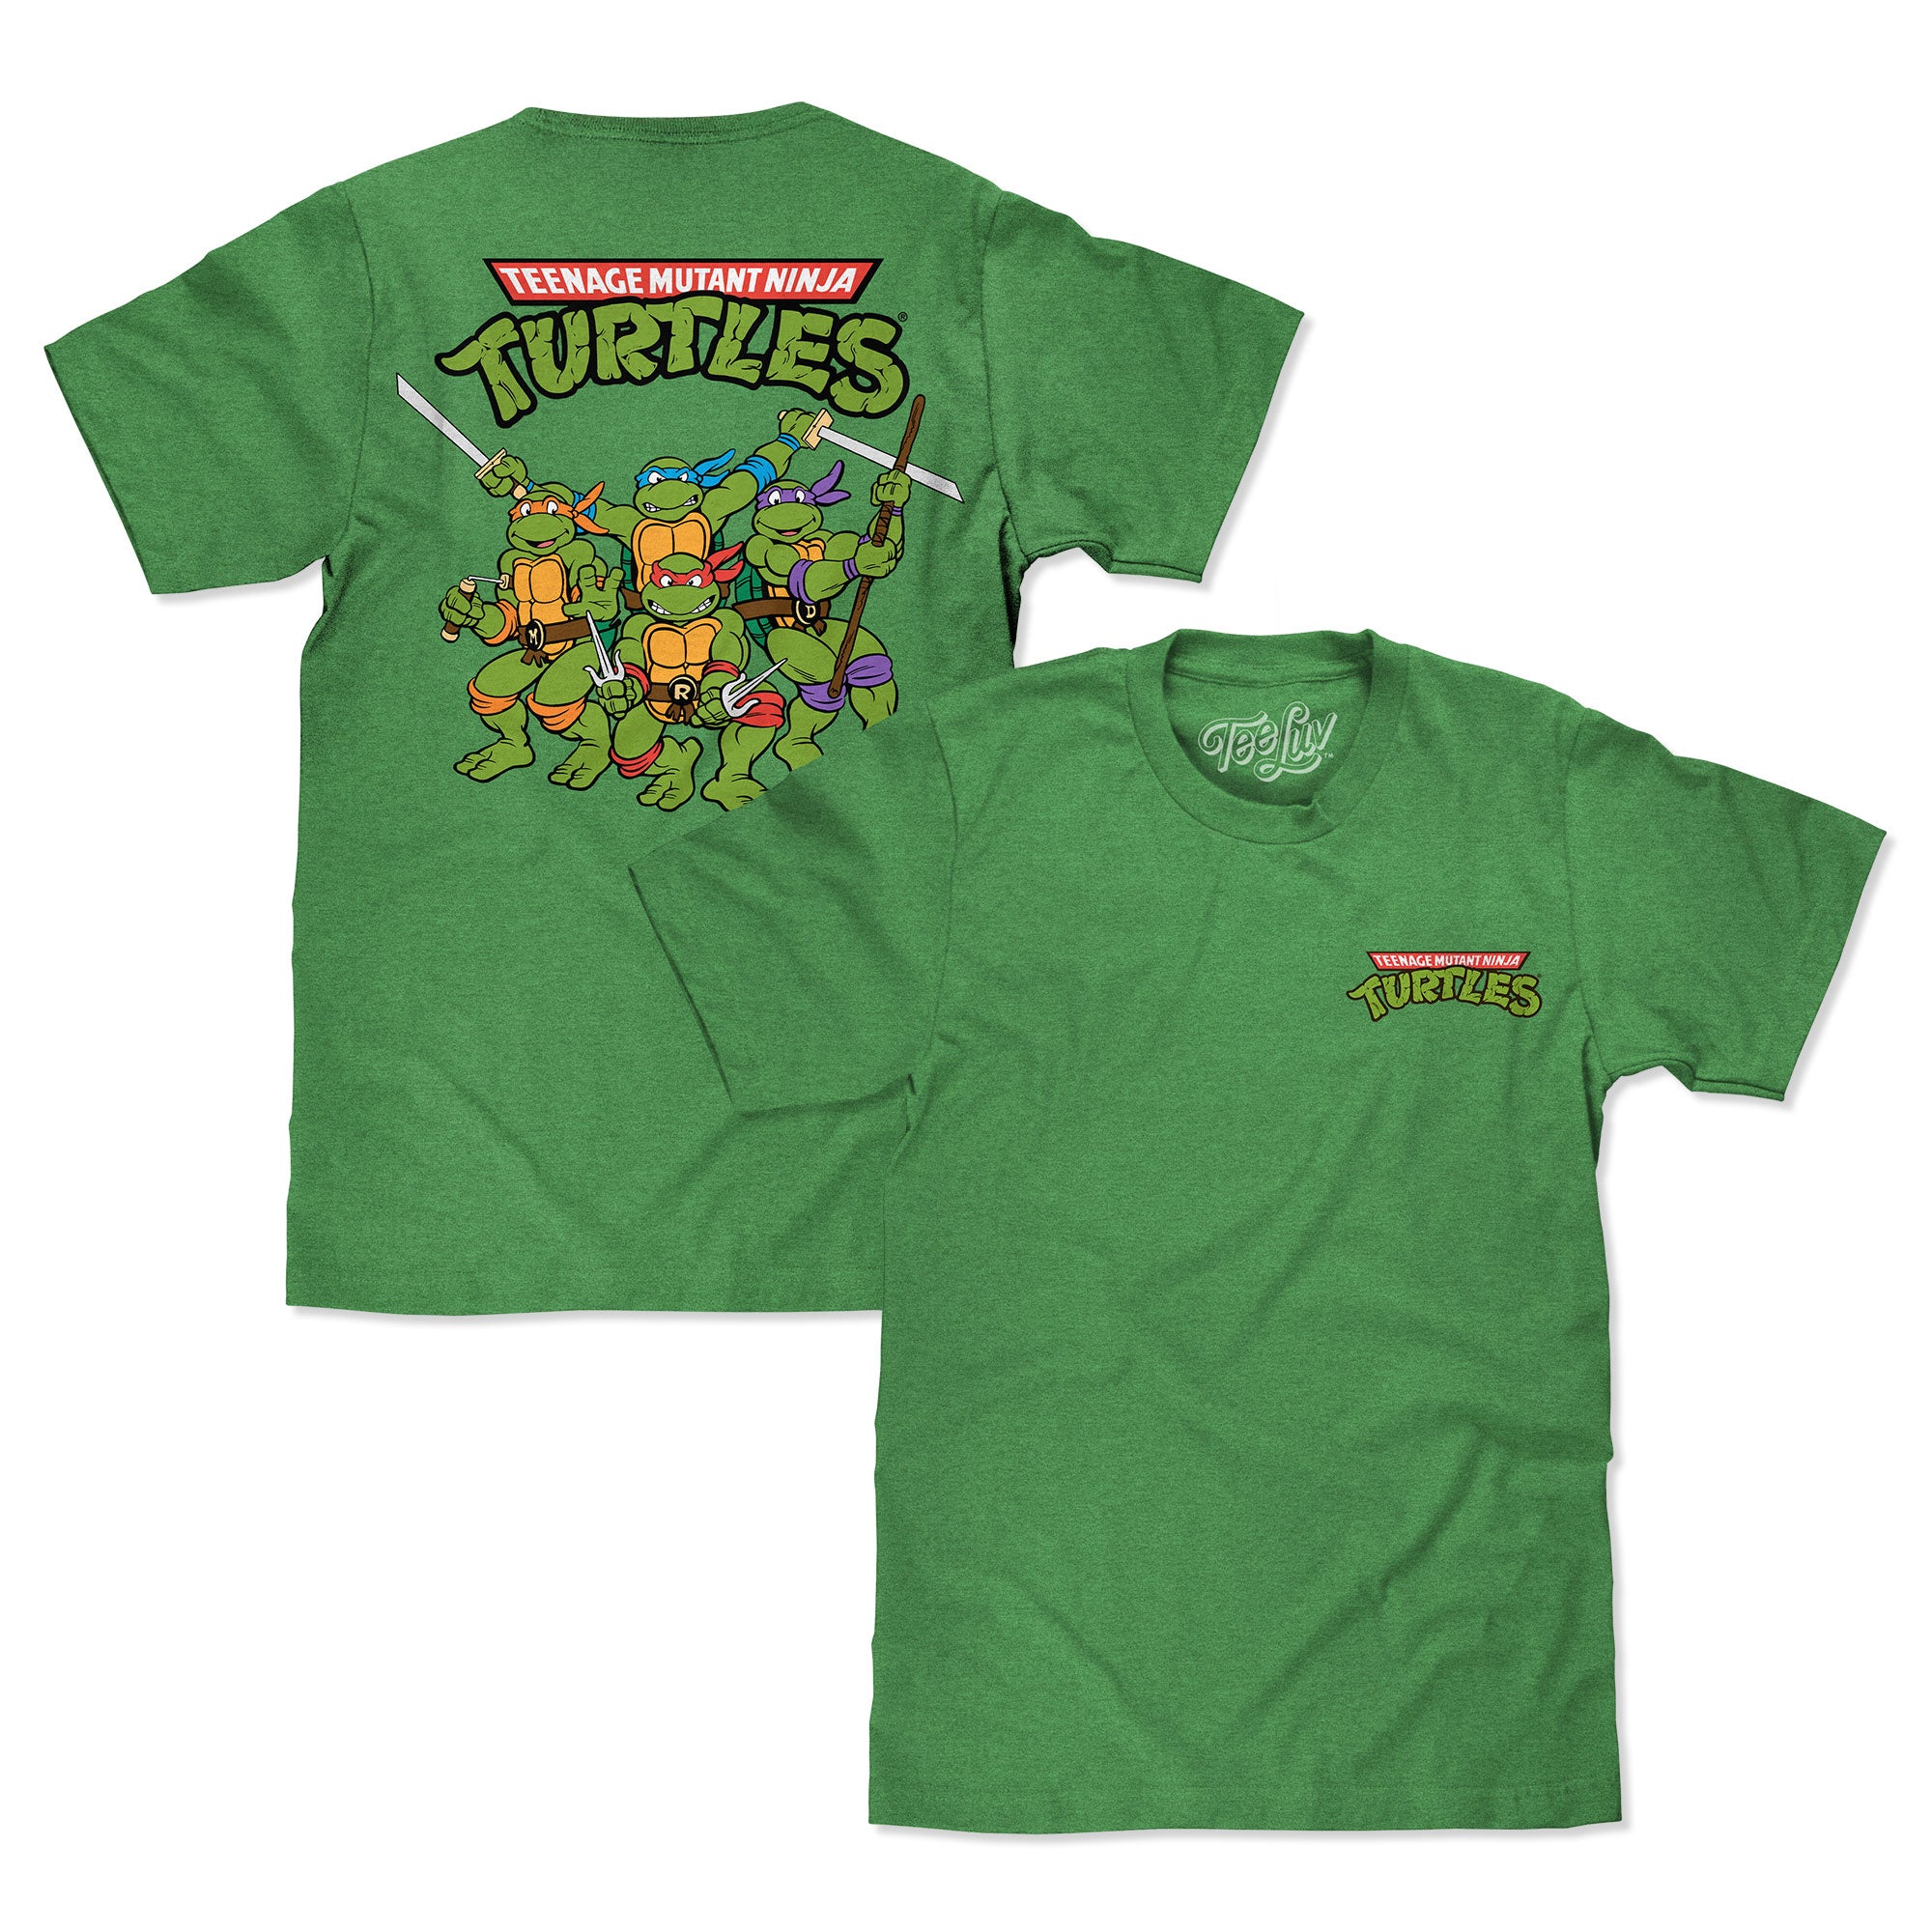 Teenage Mutant Ninja Turtles Press Start Men's Black T-shirt-Small